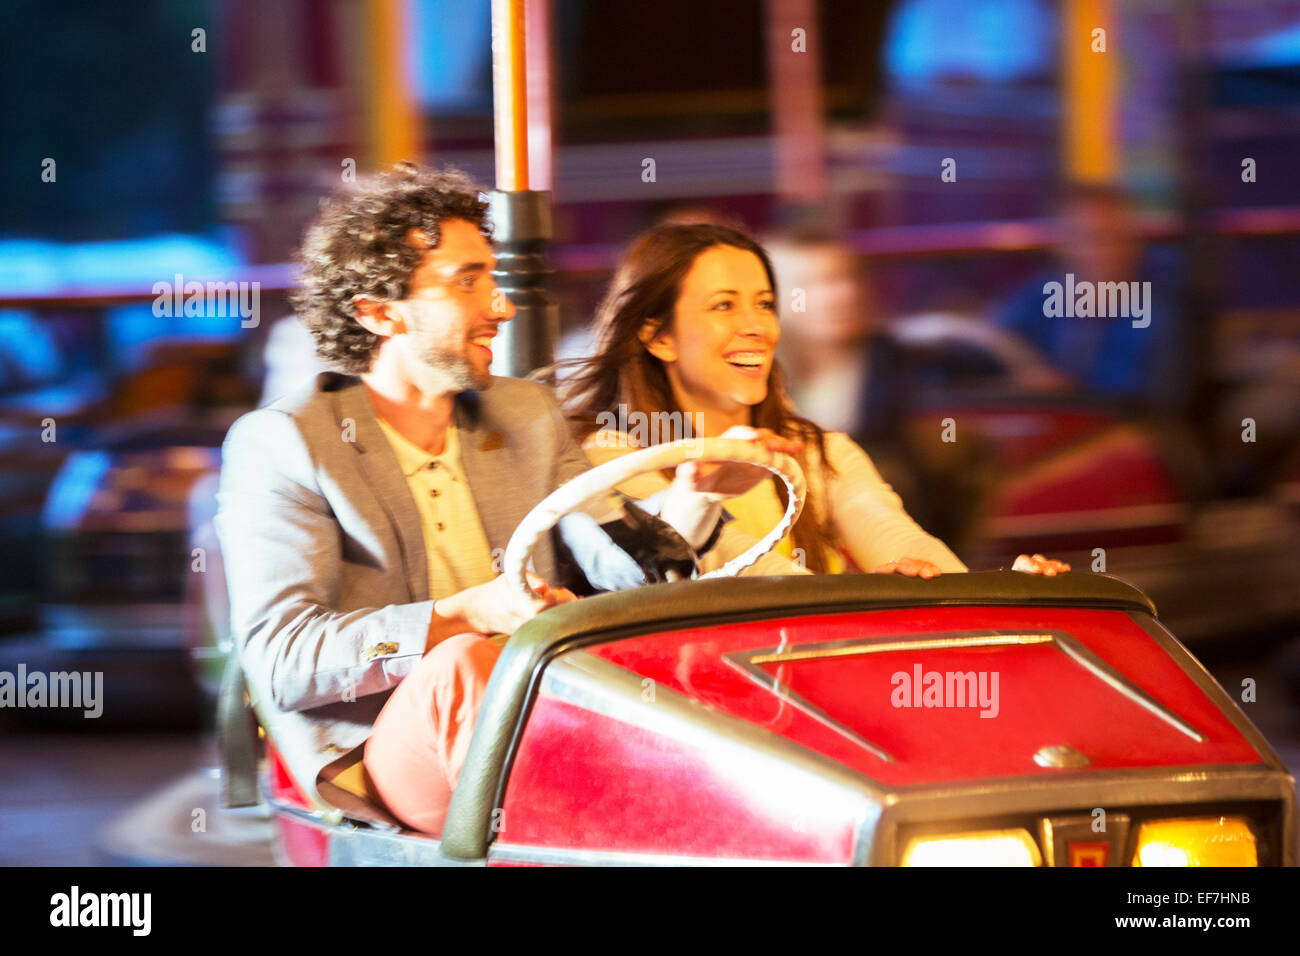 Paar auf Autoscooter fahren im Freizeitpark Stockfoto